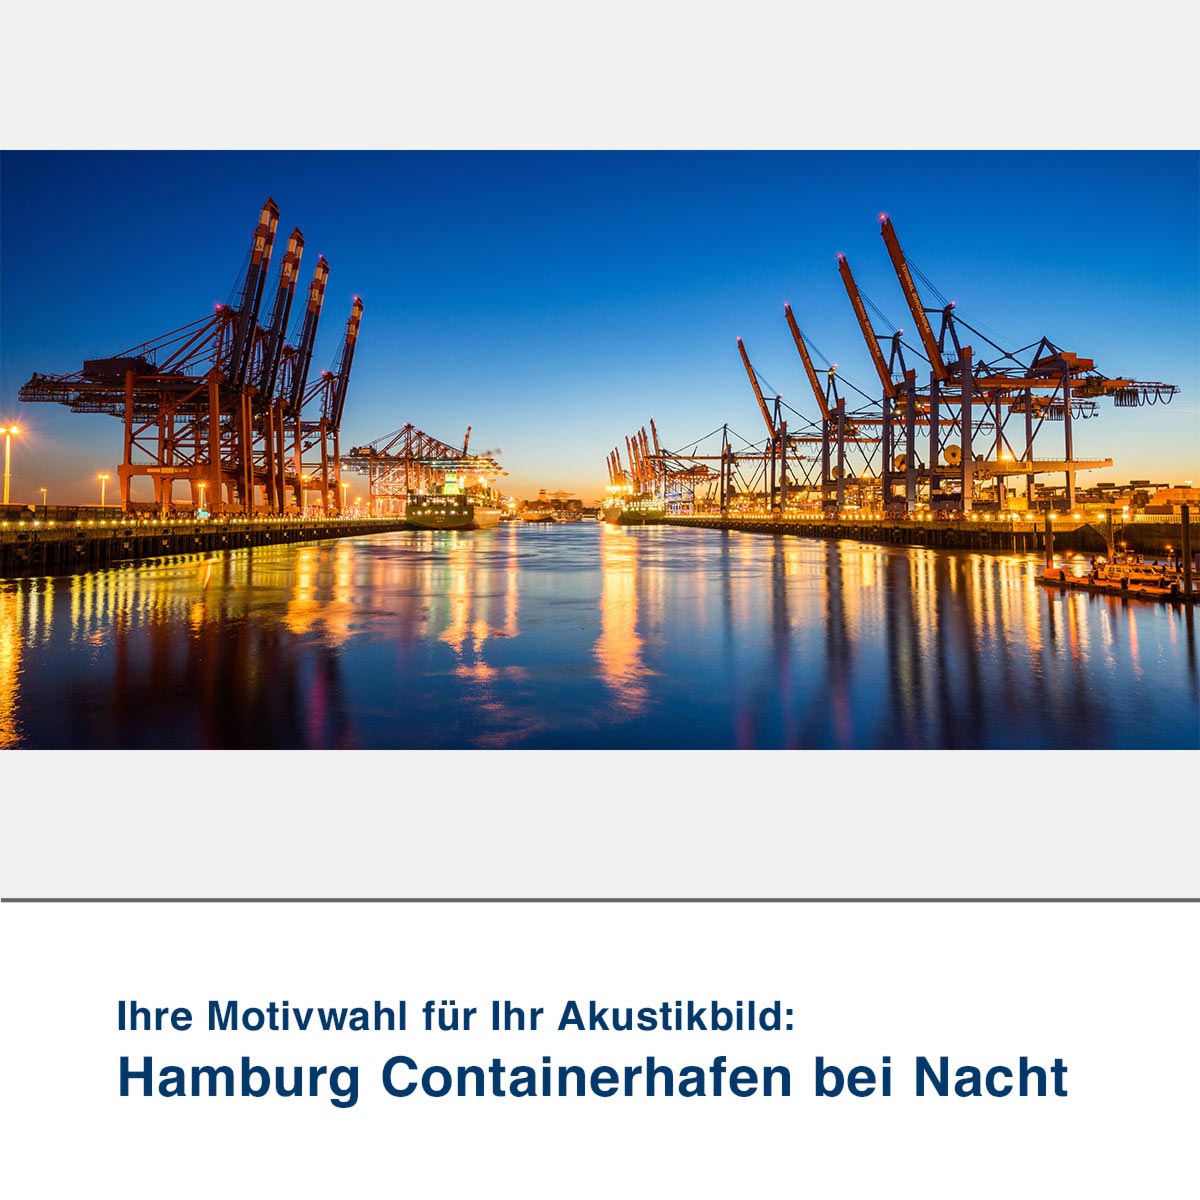 Ihre Motivwahl für Ihr Akustikbild – Hamburger Containerhafen